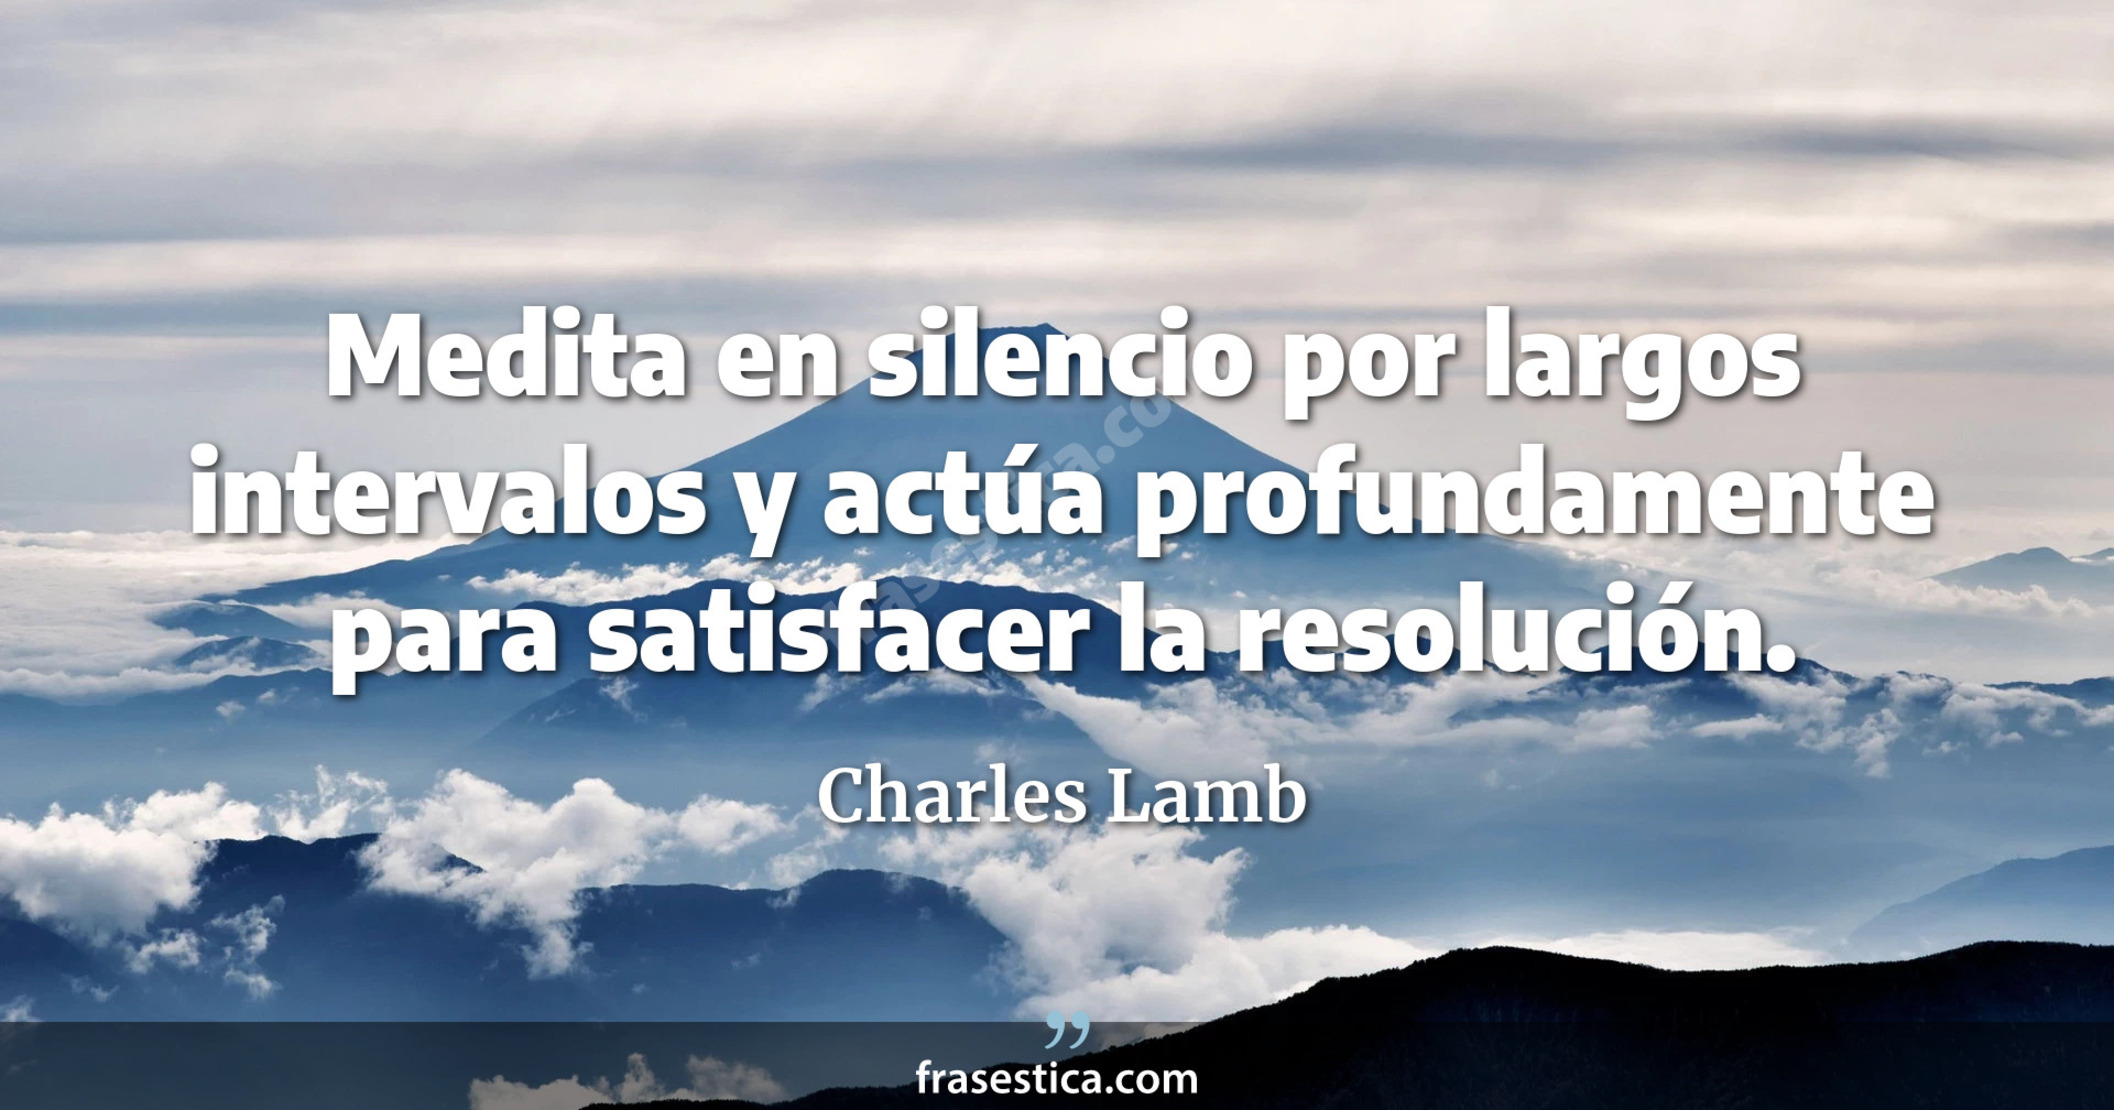 Medita en silencio por largos intervalos y actúa profundamente para satisfacer la resolución. - Charles Lamb